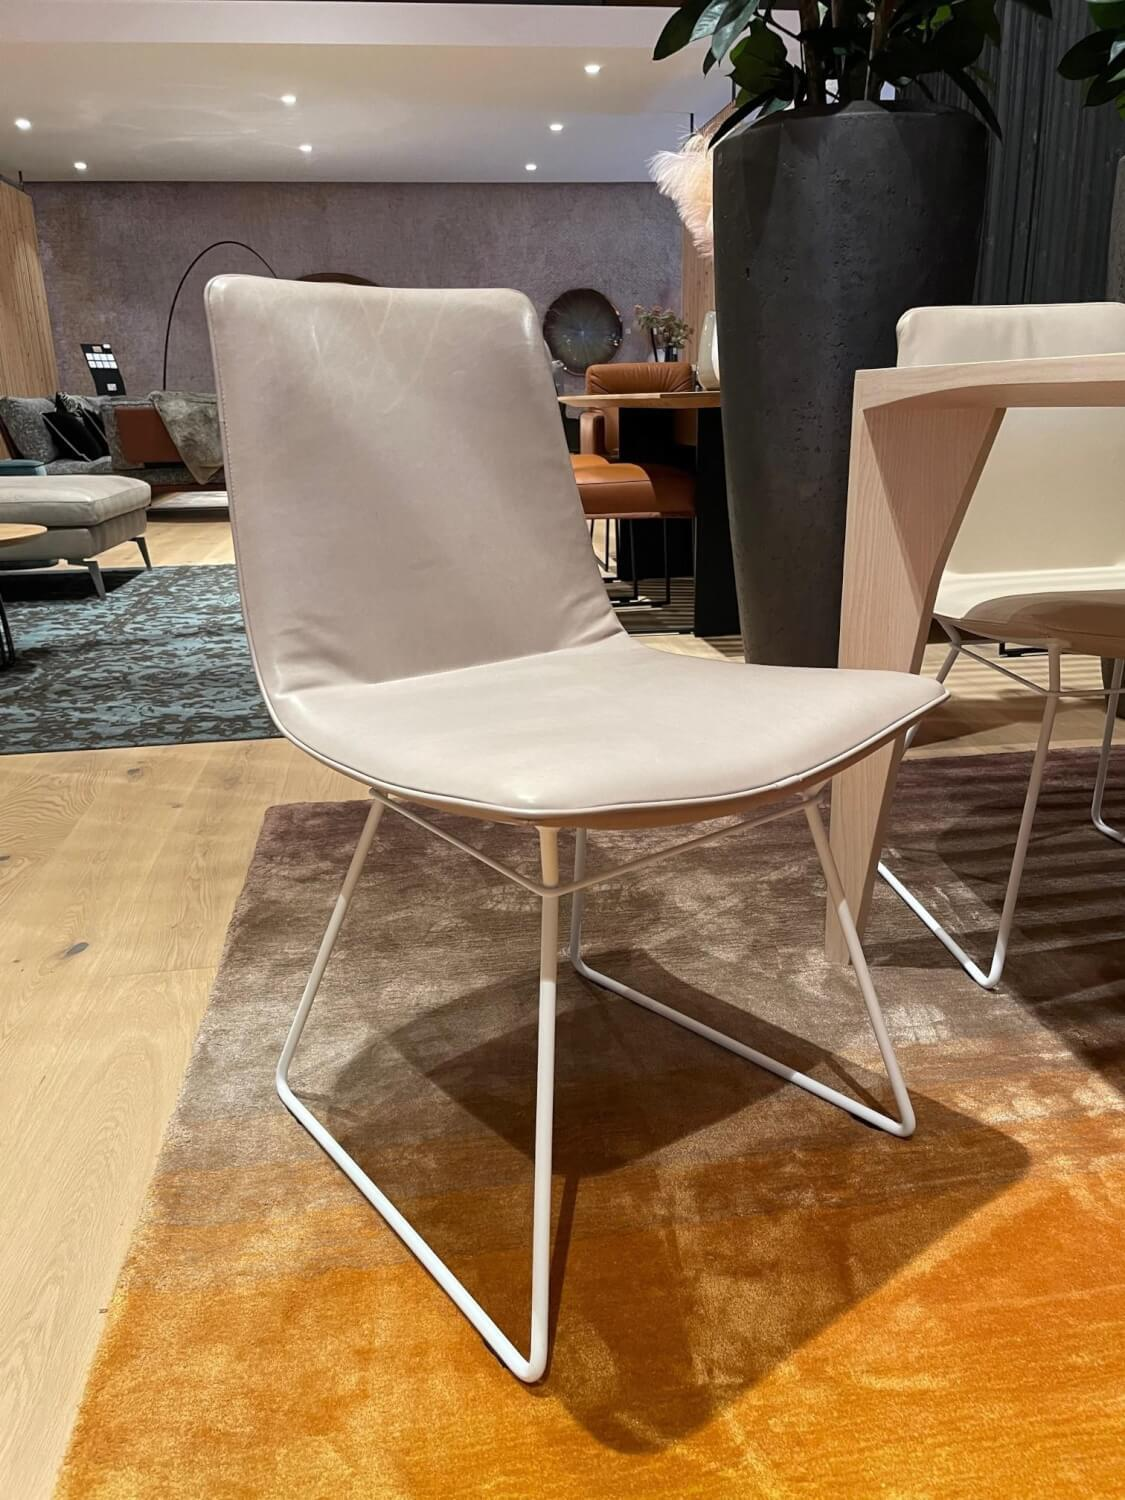 6er-Set Stuhl Amelie Leder Oman Taupe Creme Gestell Weiß Pulverbeschichtet